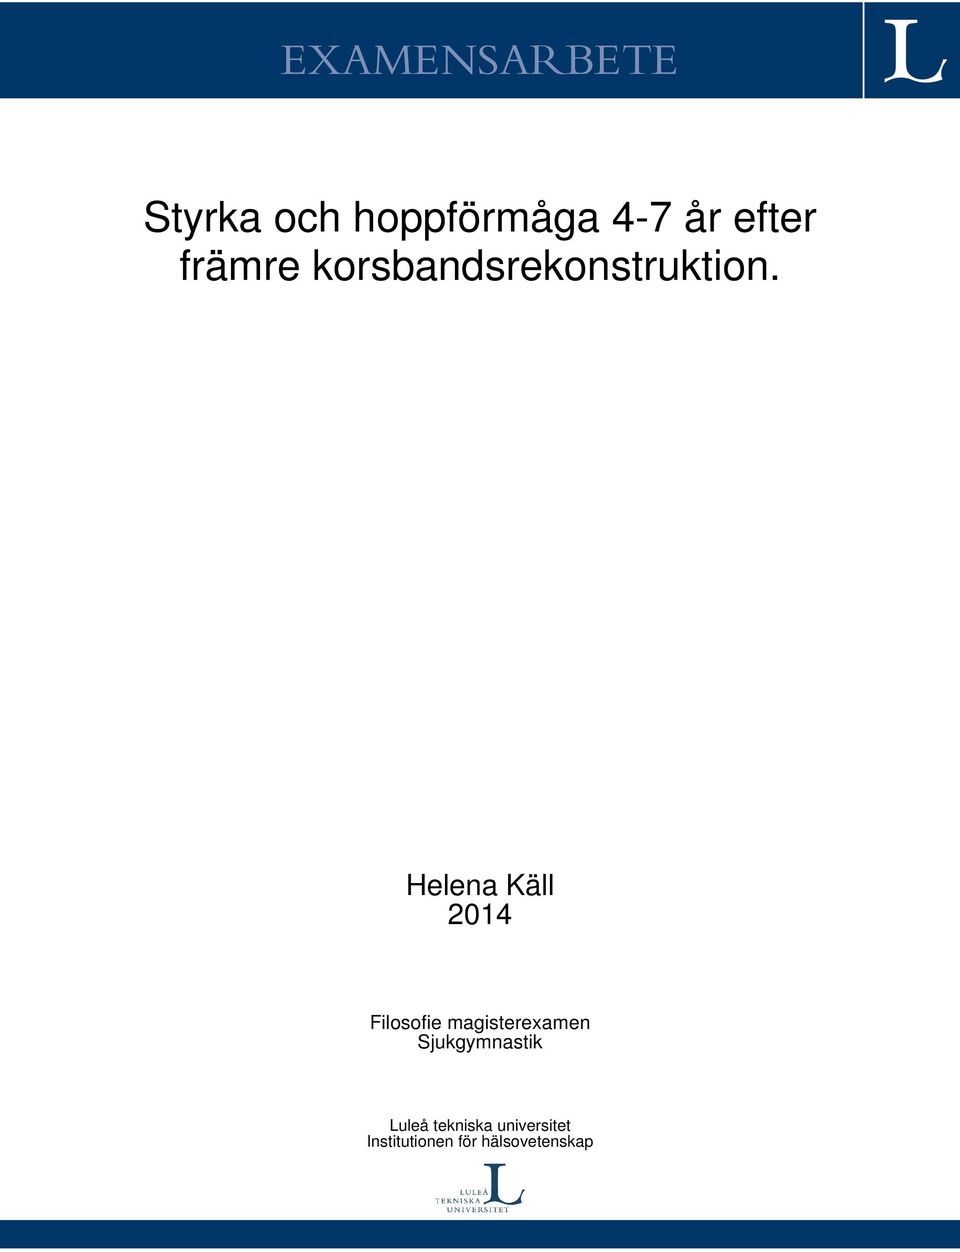 Helena Käll 2014 Filosofie magisterexamen